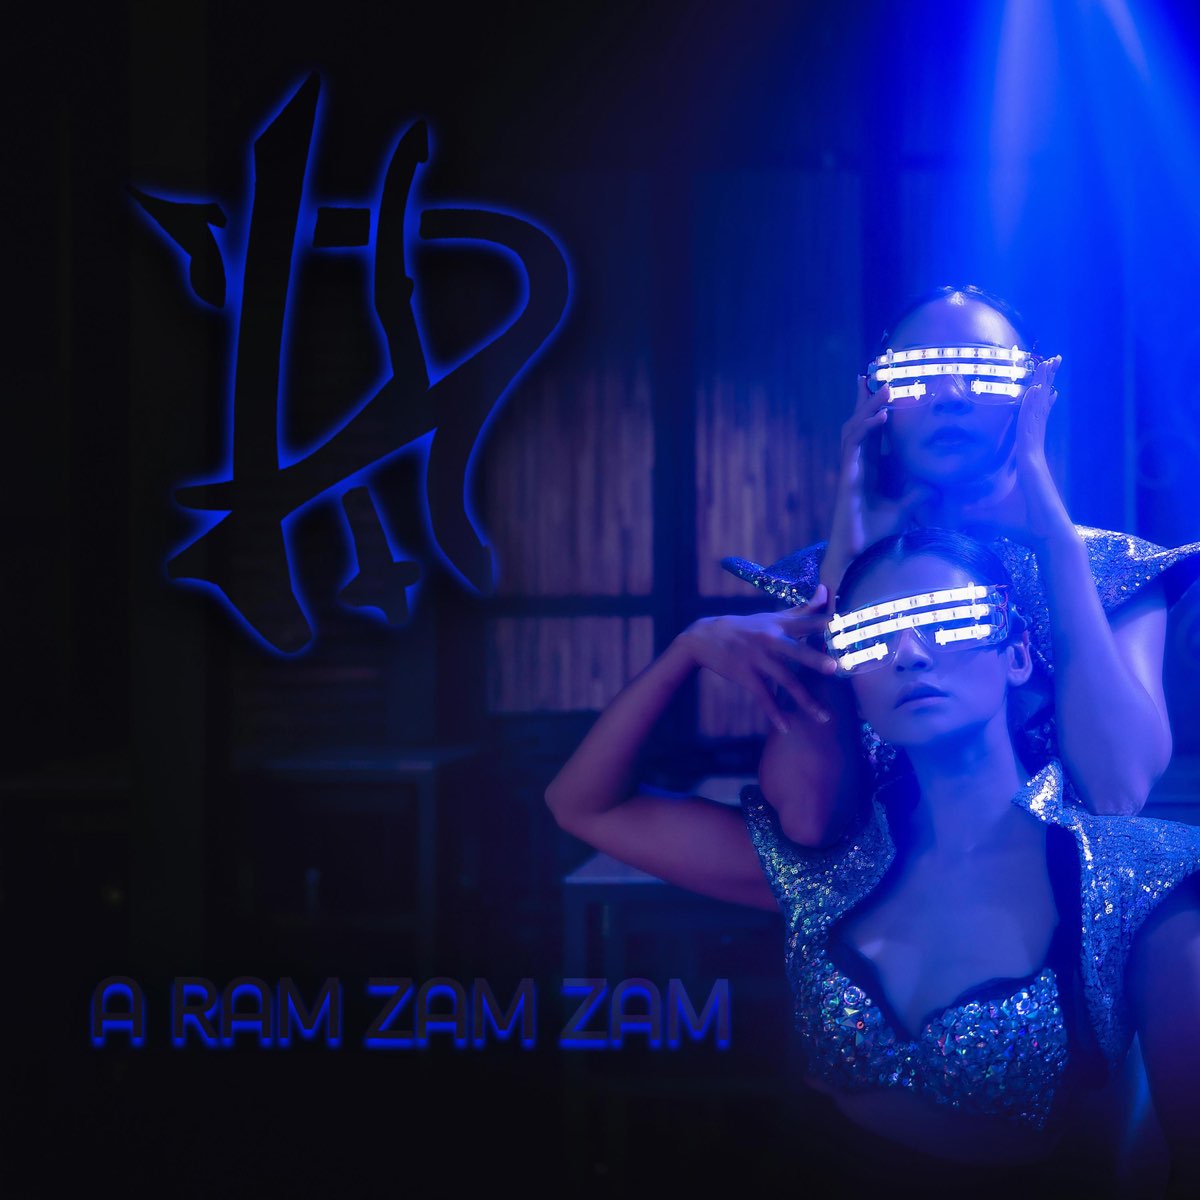 A Ram Zam Zam - Single - Album by dk86 - Apple Music